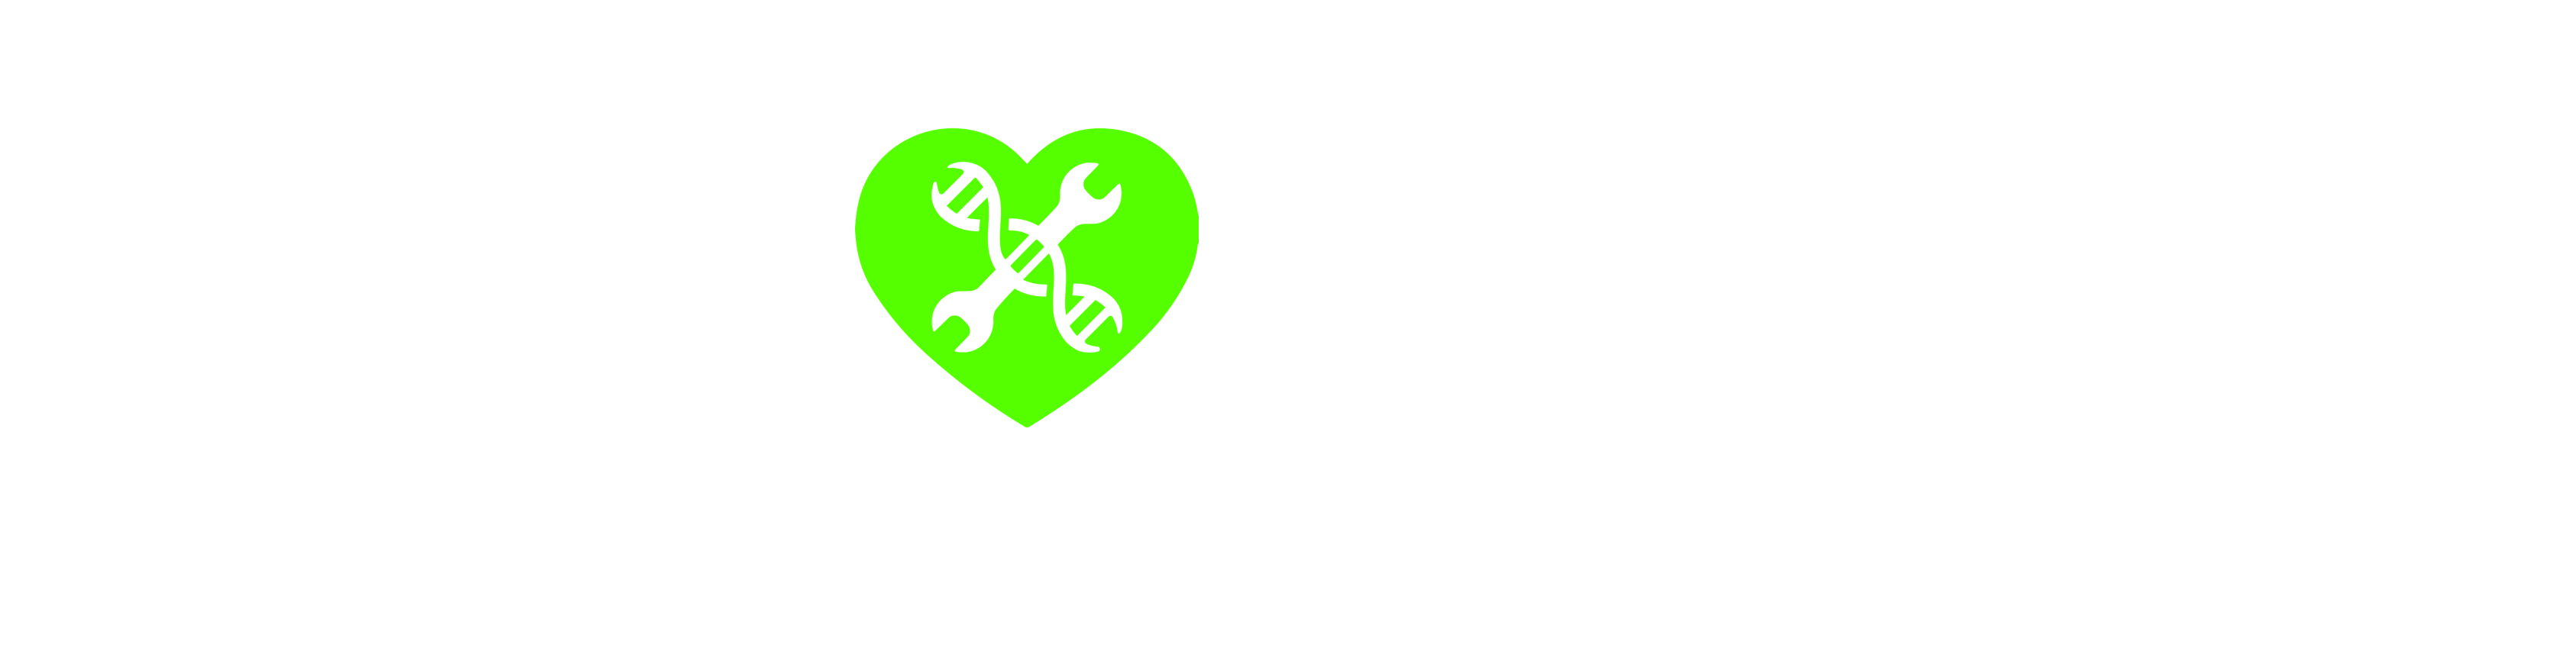 wehearthackers-logo